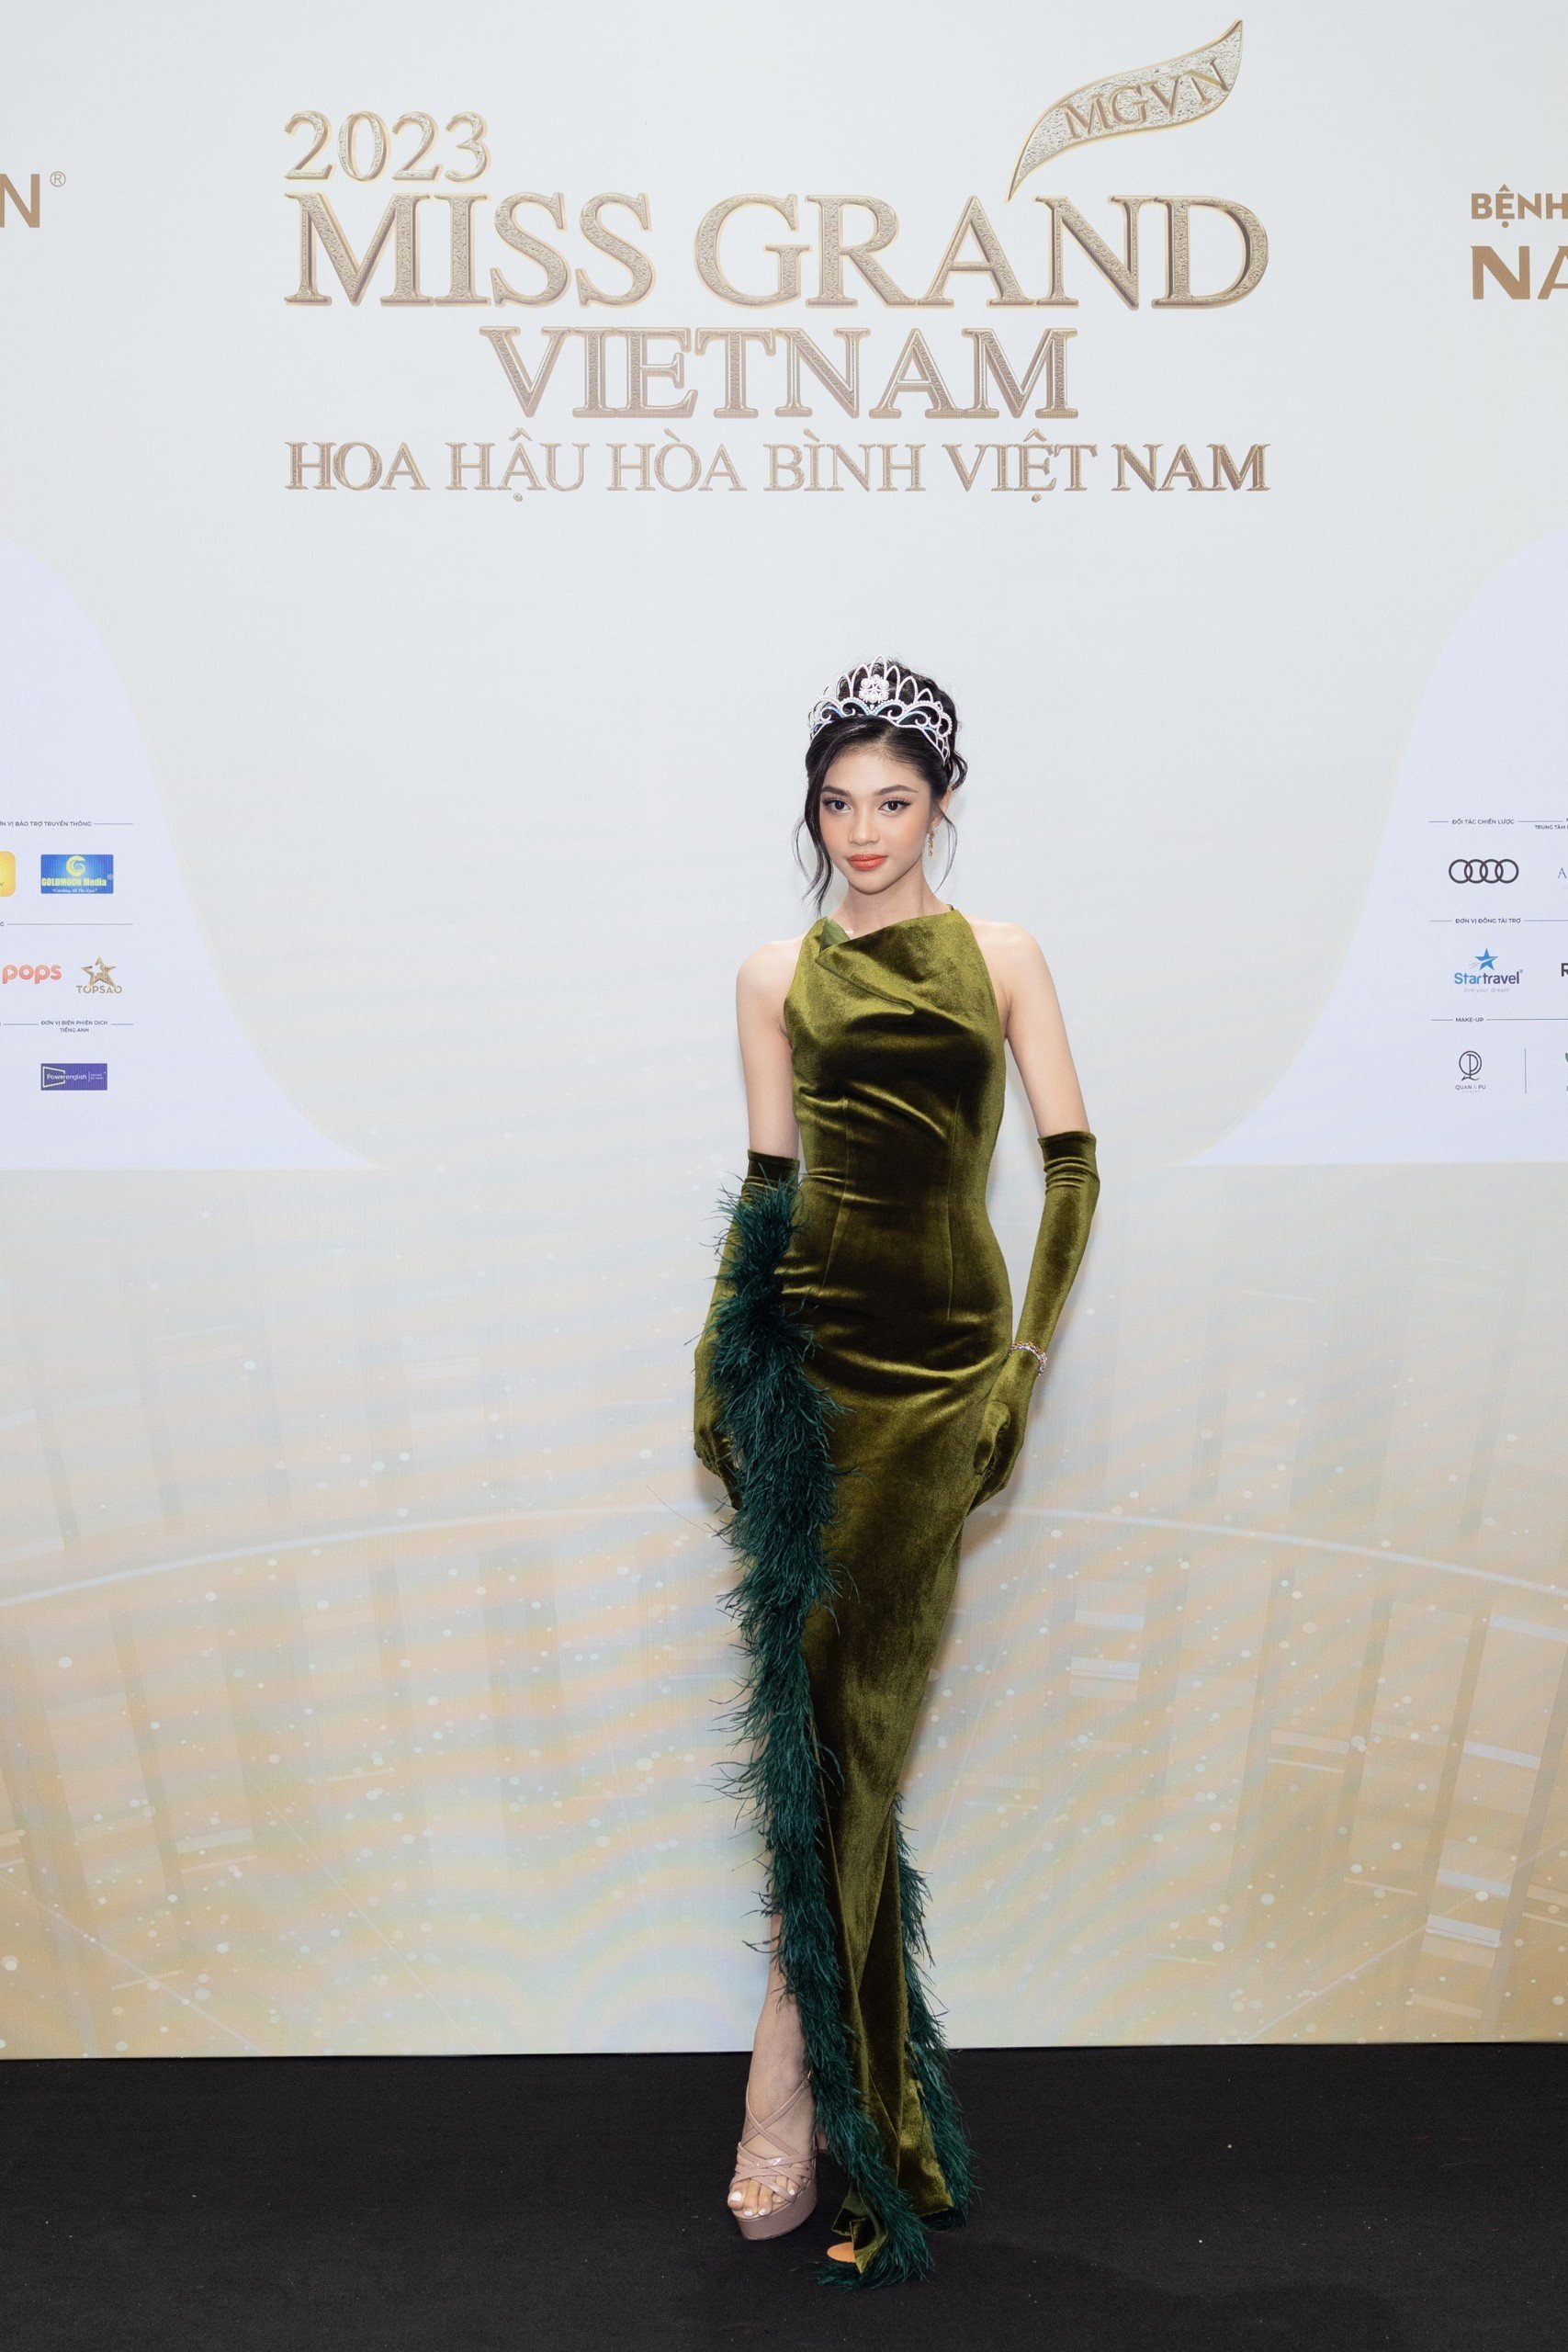 Thảm đỏ chung khảo toàn quốc Miss Grand Vietnam 2023: Huỳnh Minh Kiên khoe đường cong, Thuỳ Tiên kín đáo vẫn đẹp - ảnh 4